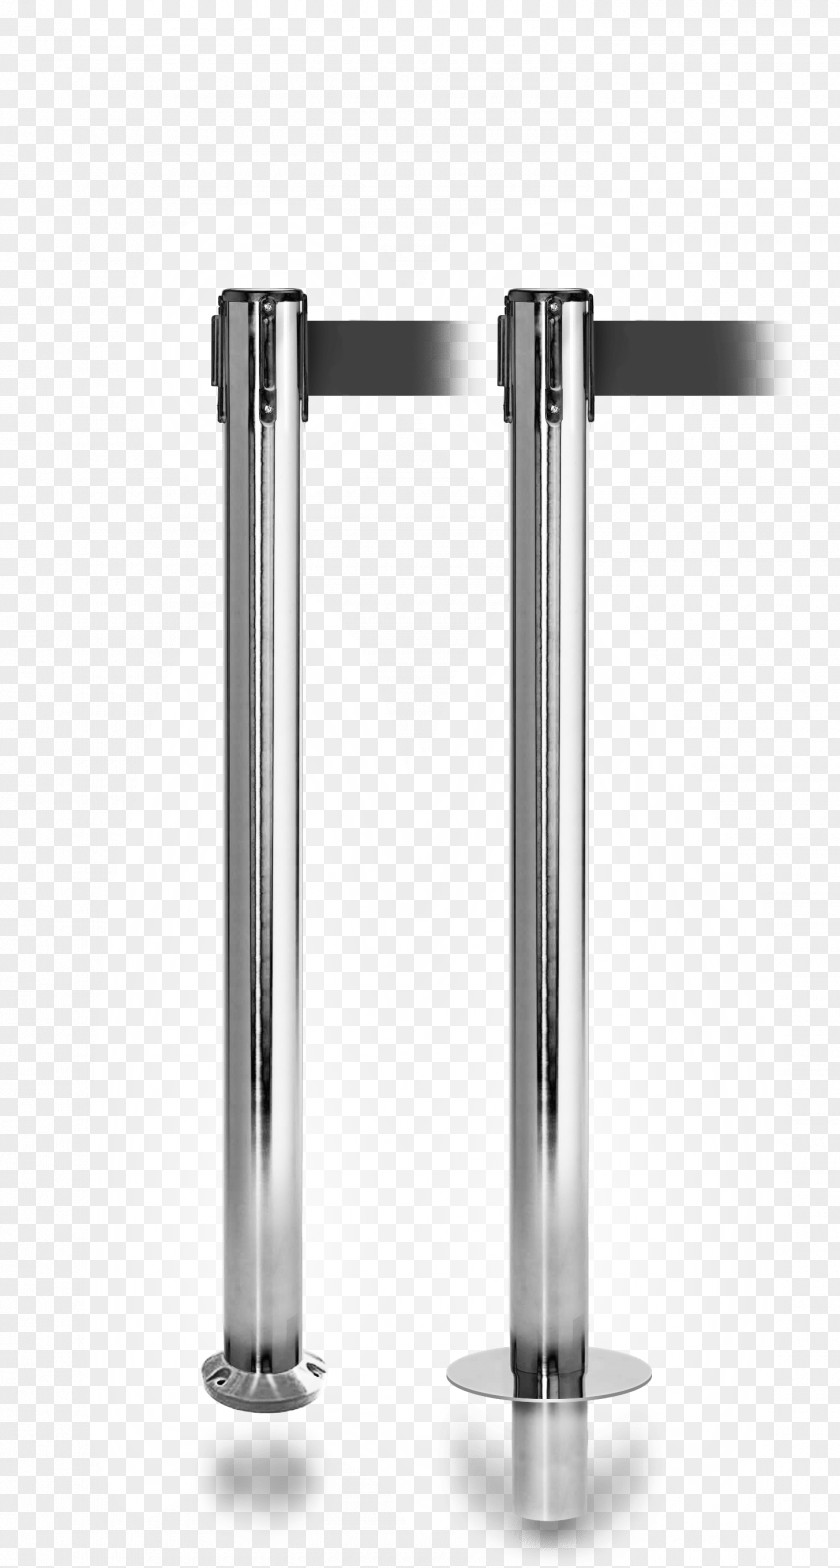 Design Steel Cylinder Angle PNG